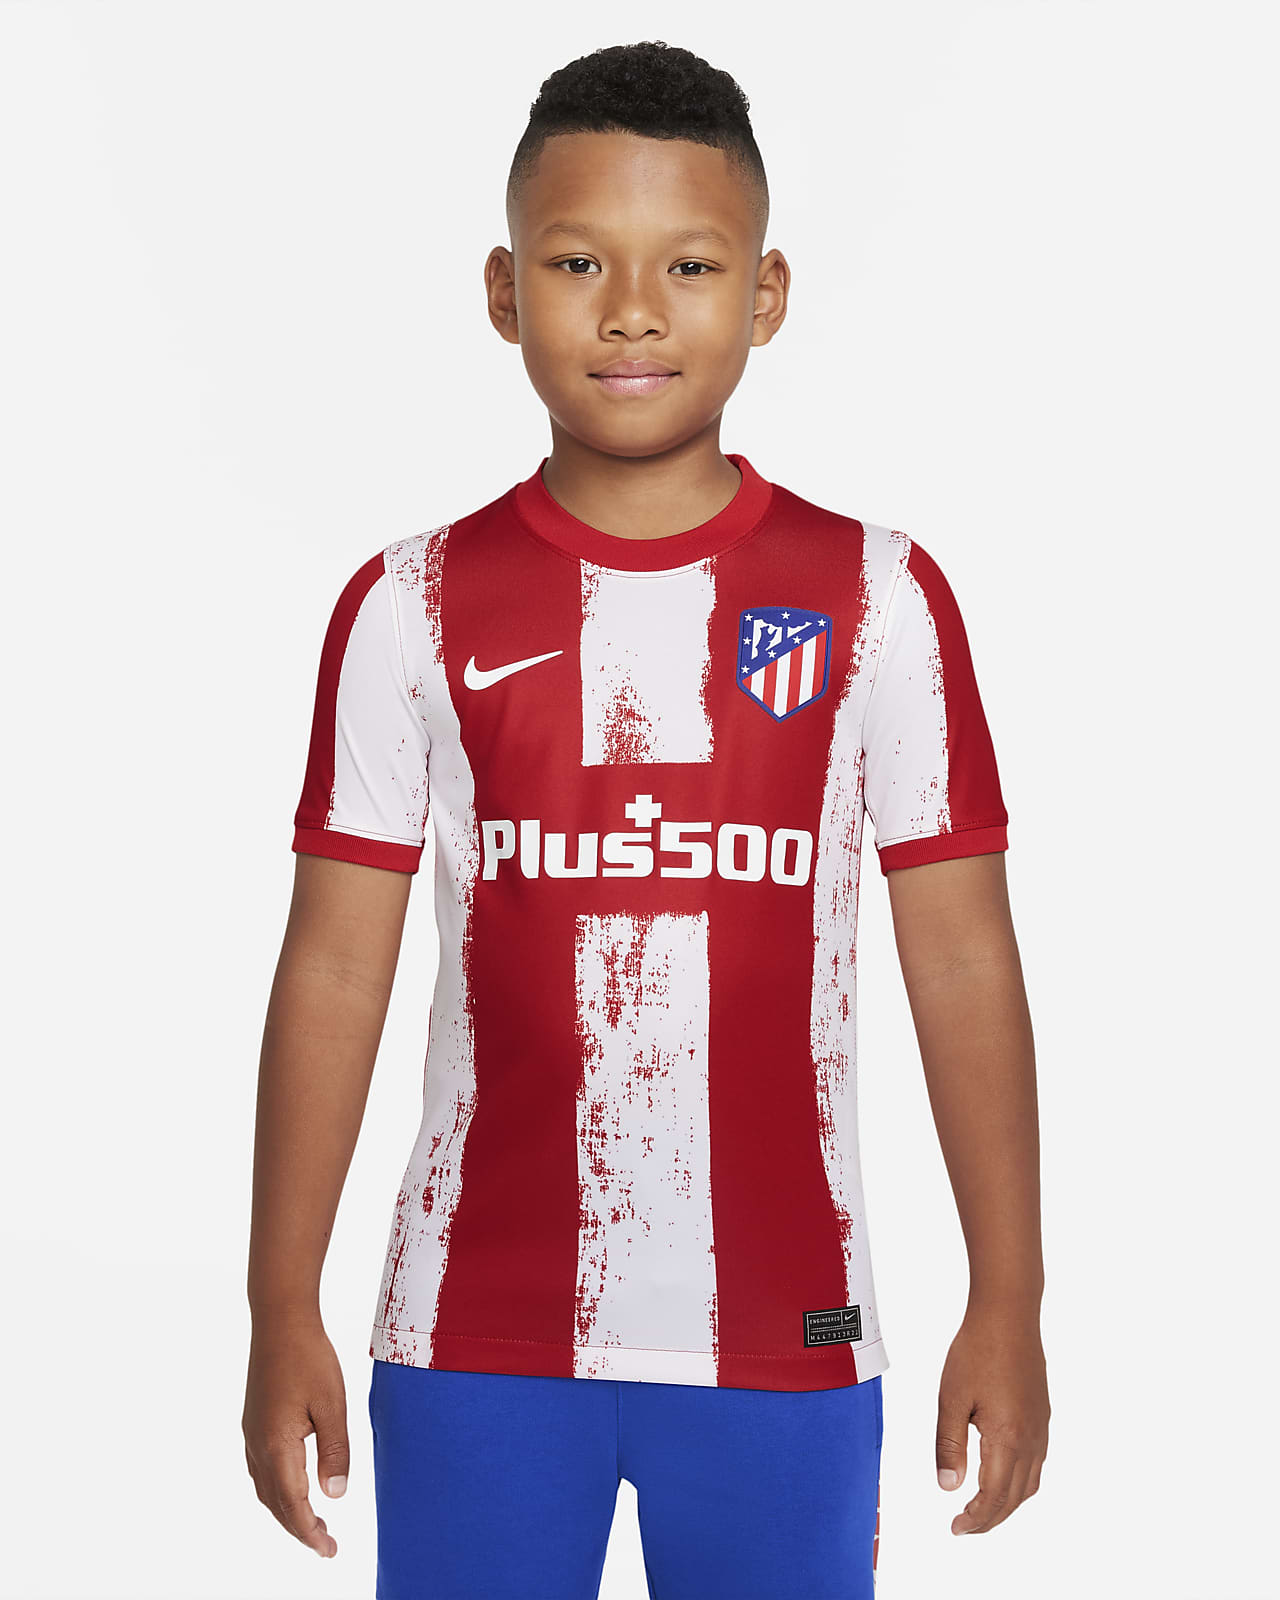 Atlético 2021/22 Home-fodboldtrøje til større børn. Nike